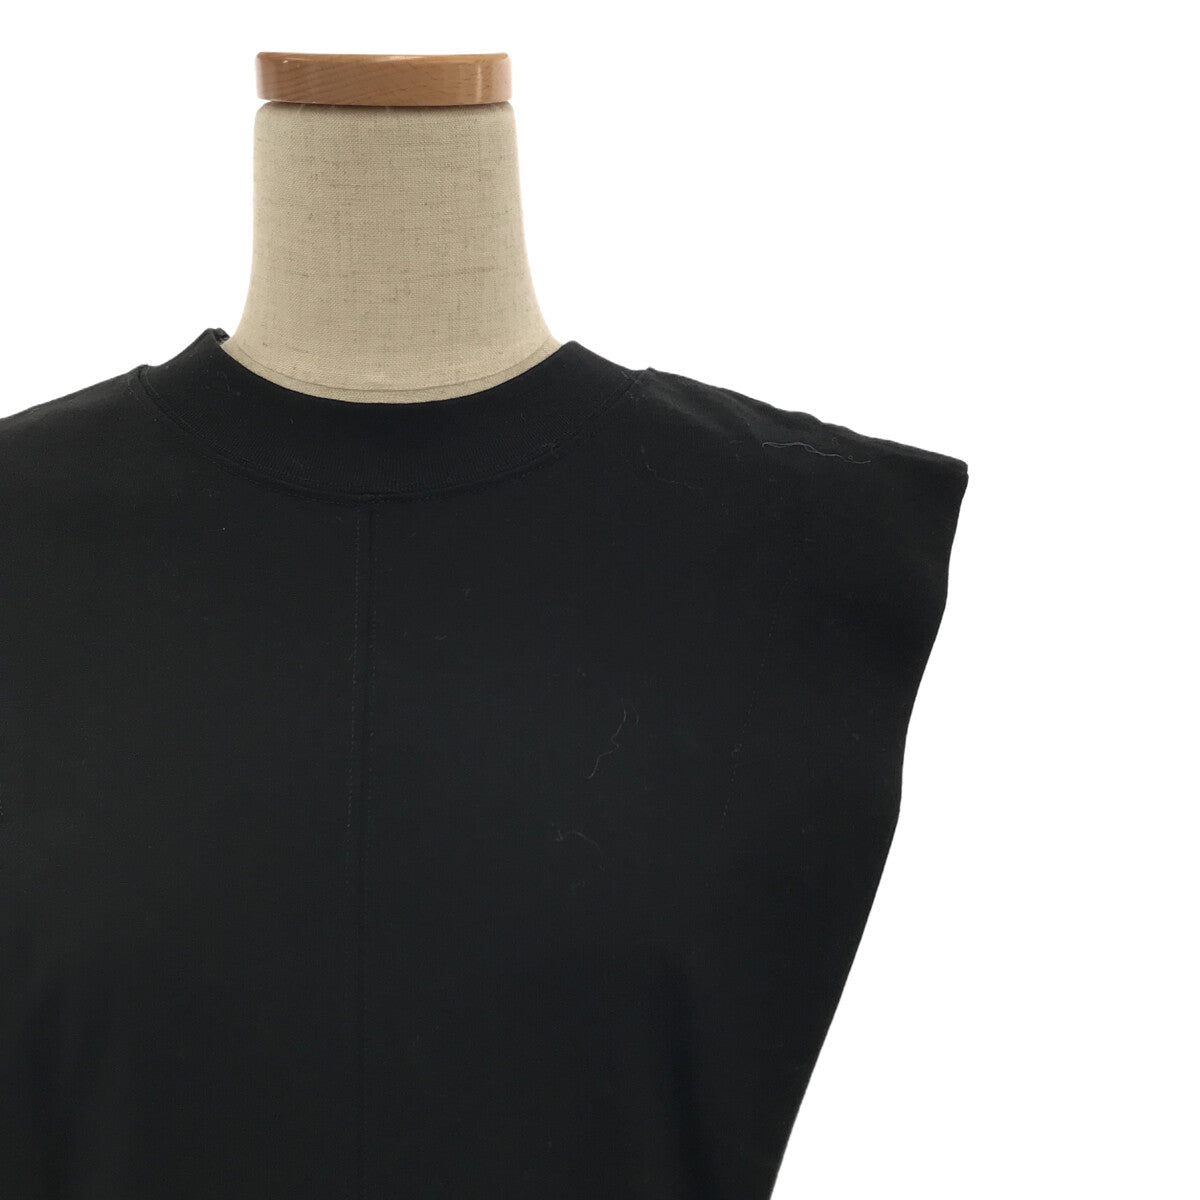 袖丈七分袖マメクロゴウチMameKurogouchiコットンジャージードレス黒サイズ2